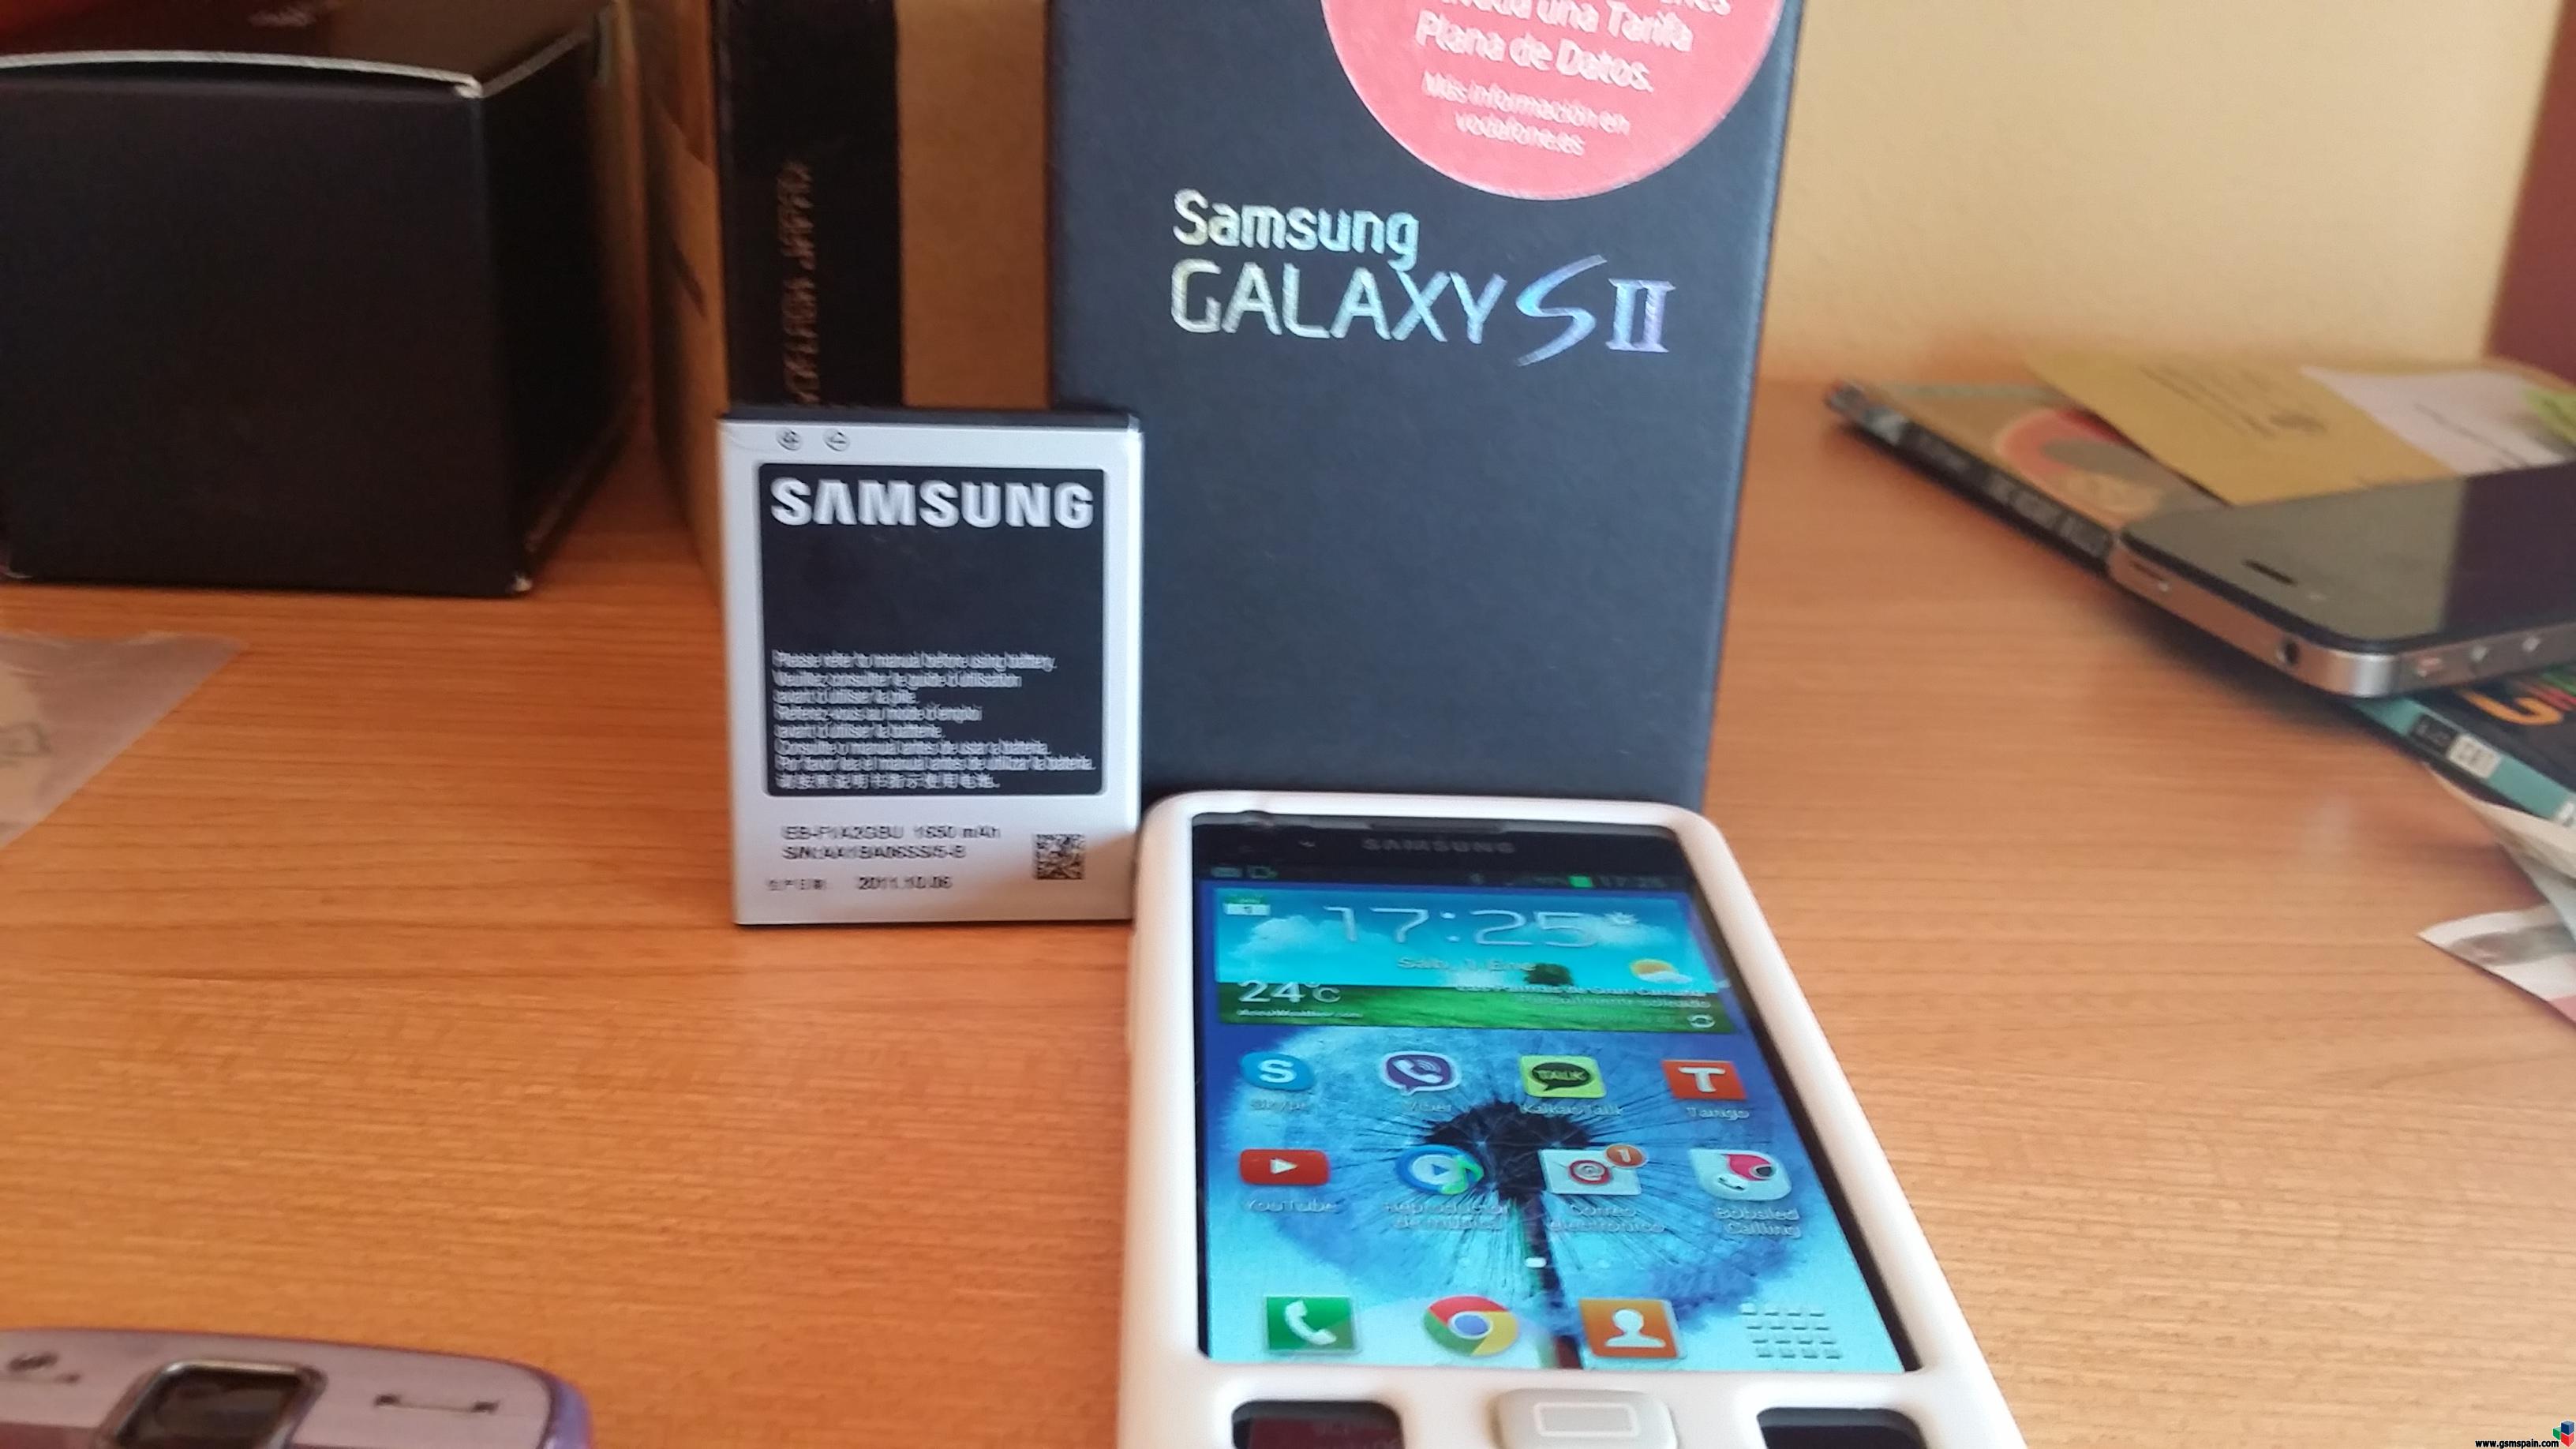 [VENDO] Samsung Galaxy S2 16gb  (2BATERIAS ORIGIBALES Y FUNDA) 85 EUROS!!!!!!!!!!!!!!!!